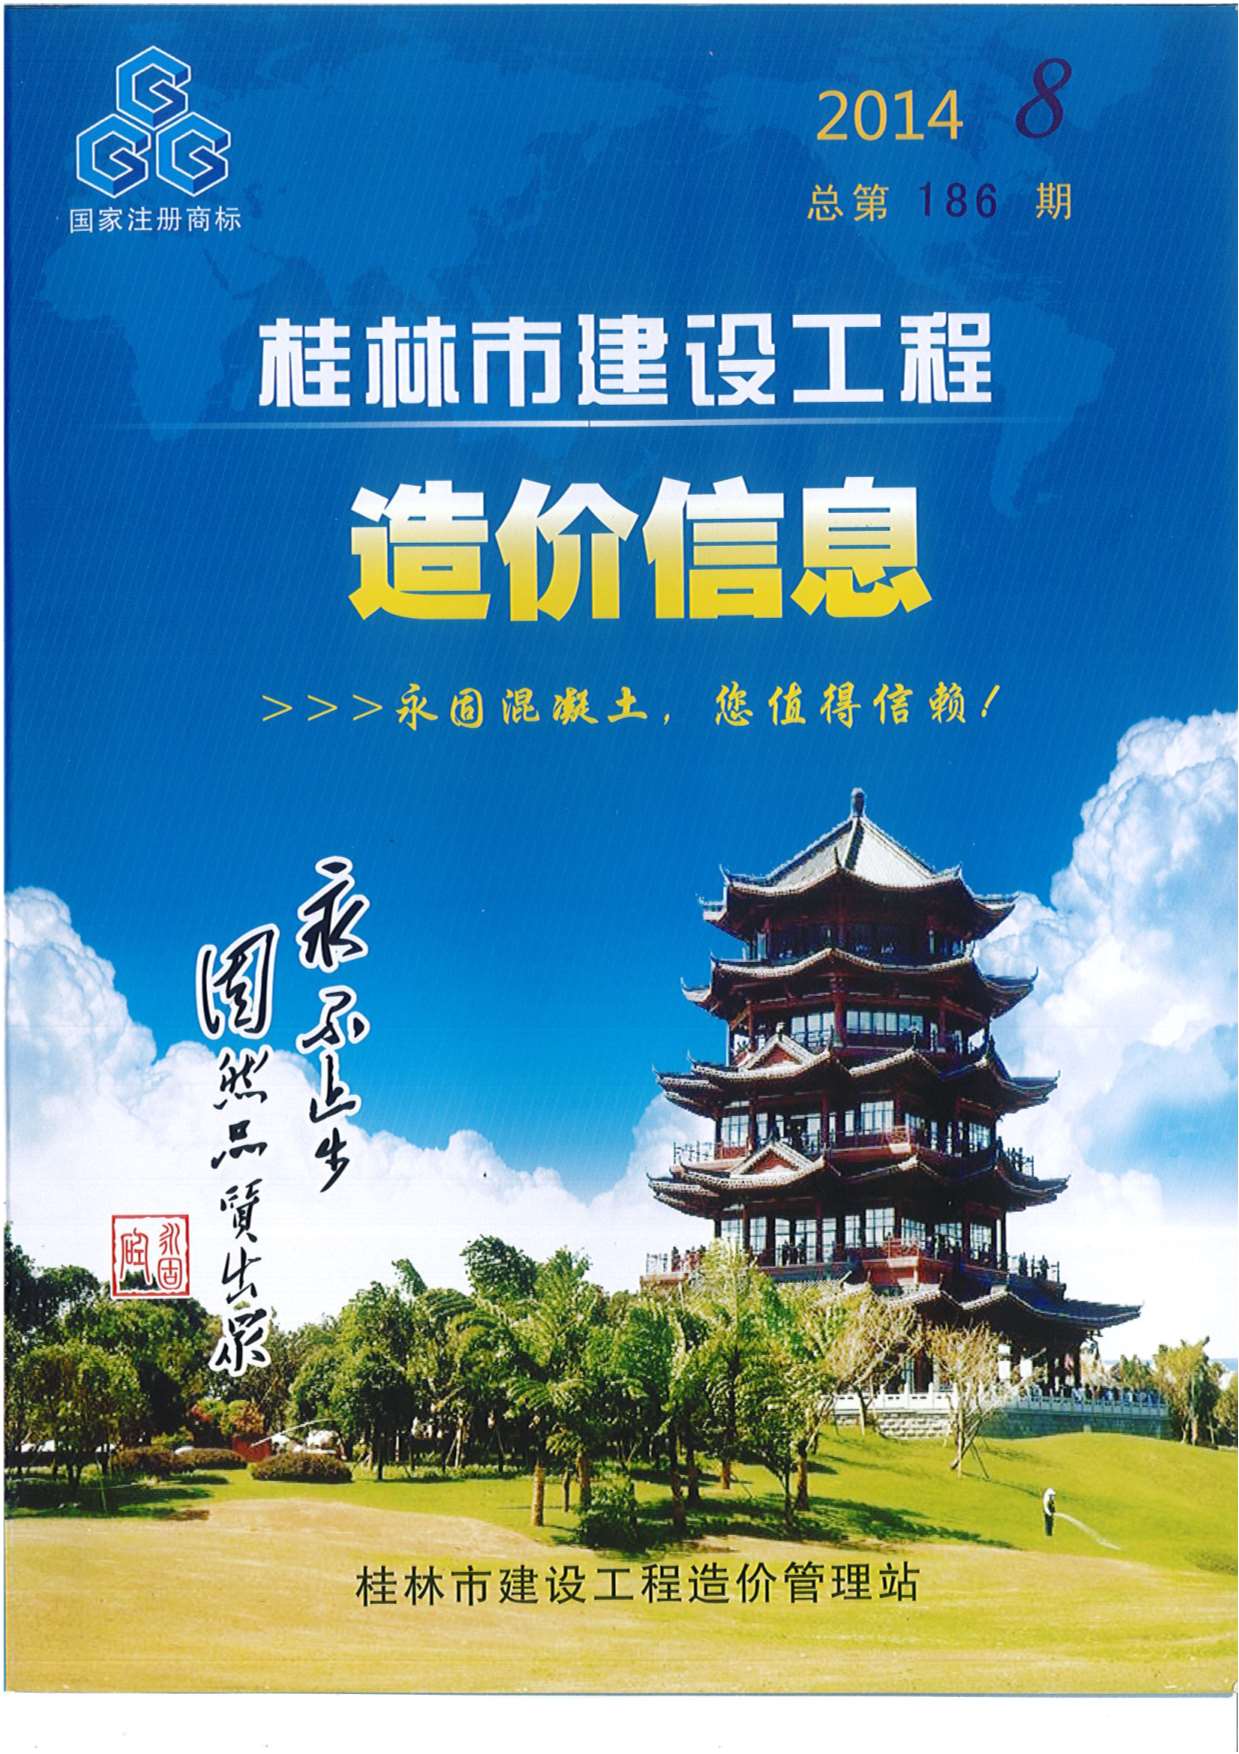 桂林市2014年8月建设工程造价信息造价库信息价